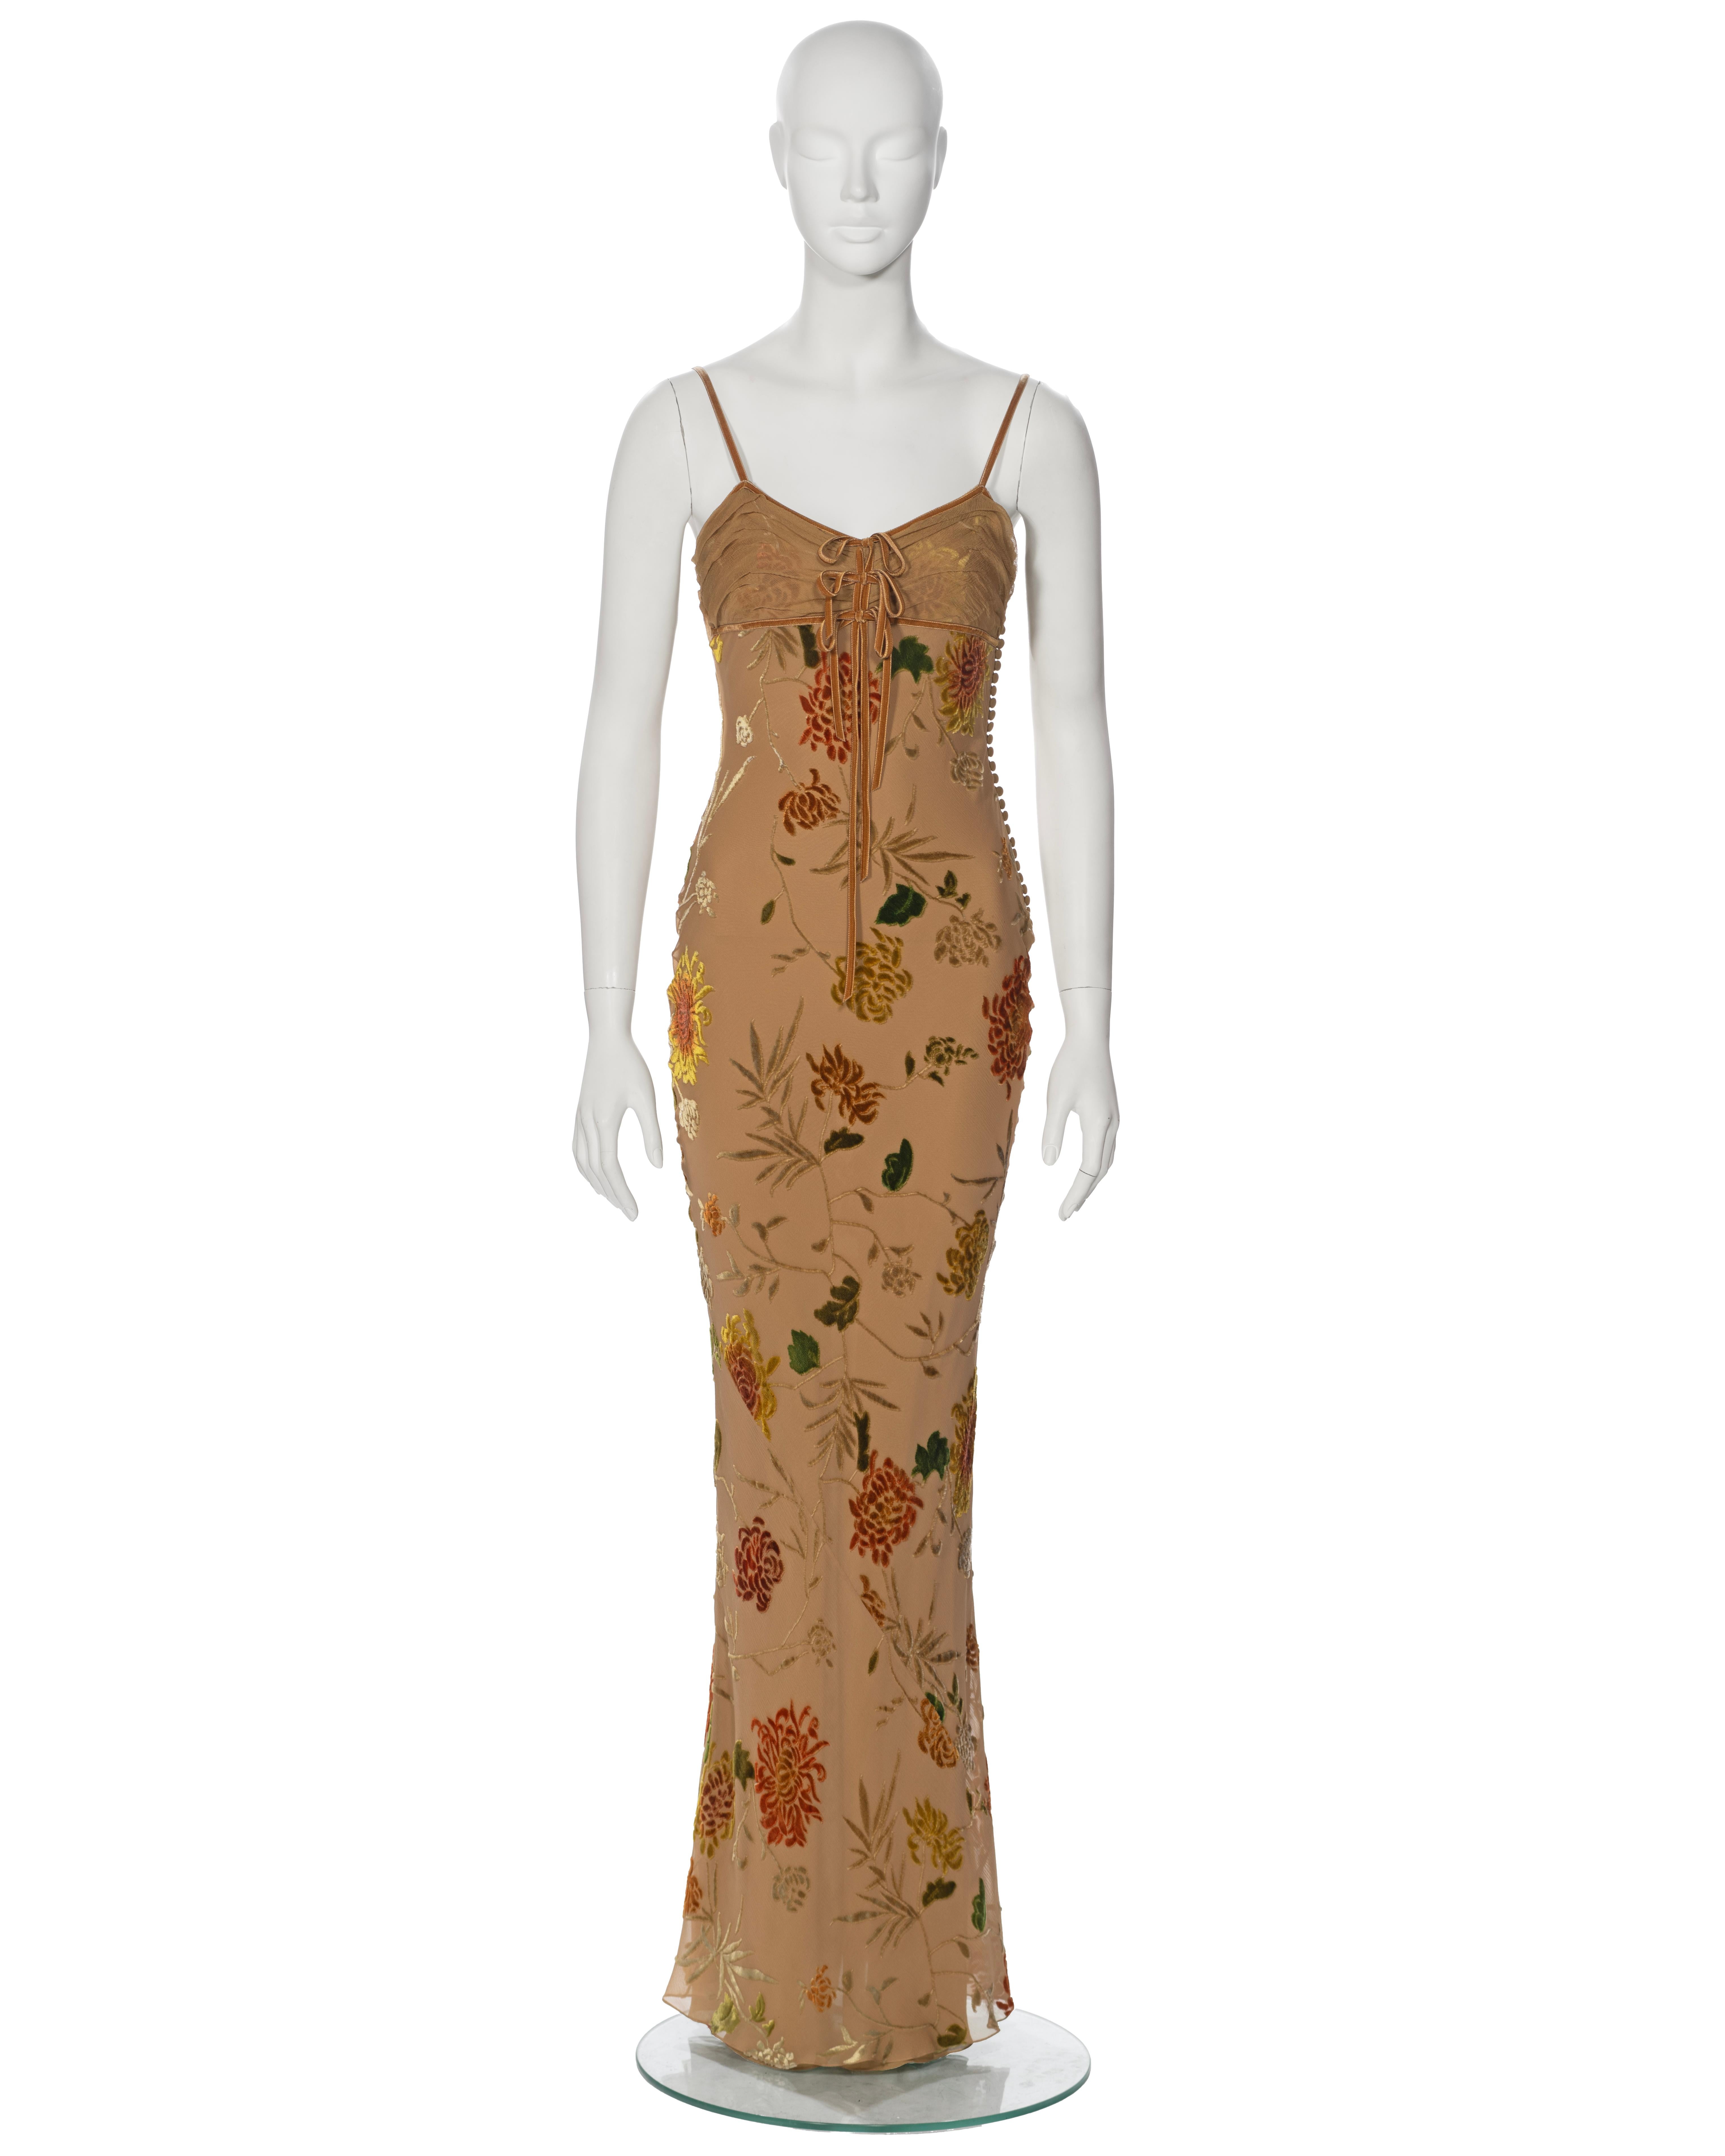 ▪ Archival Christian Dior Maxi Dress
▪ Directeur de la création : John Galliano
▪ Printemps-été 2006
▪ Vendu par One Of A Kind Archive
▪ Elegamment confectionnée en velours dévoré tan, cette robe présente un motif floral captivant dans une palette